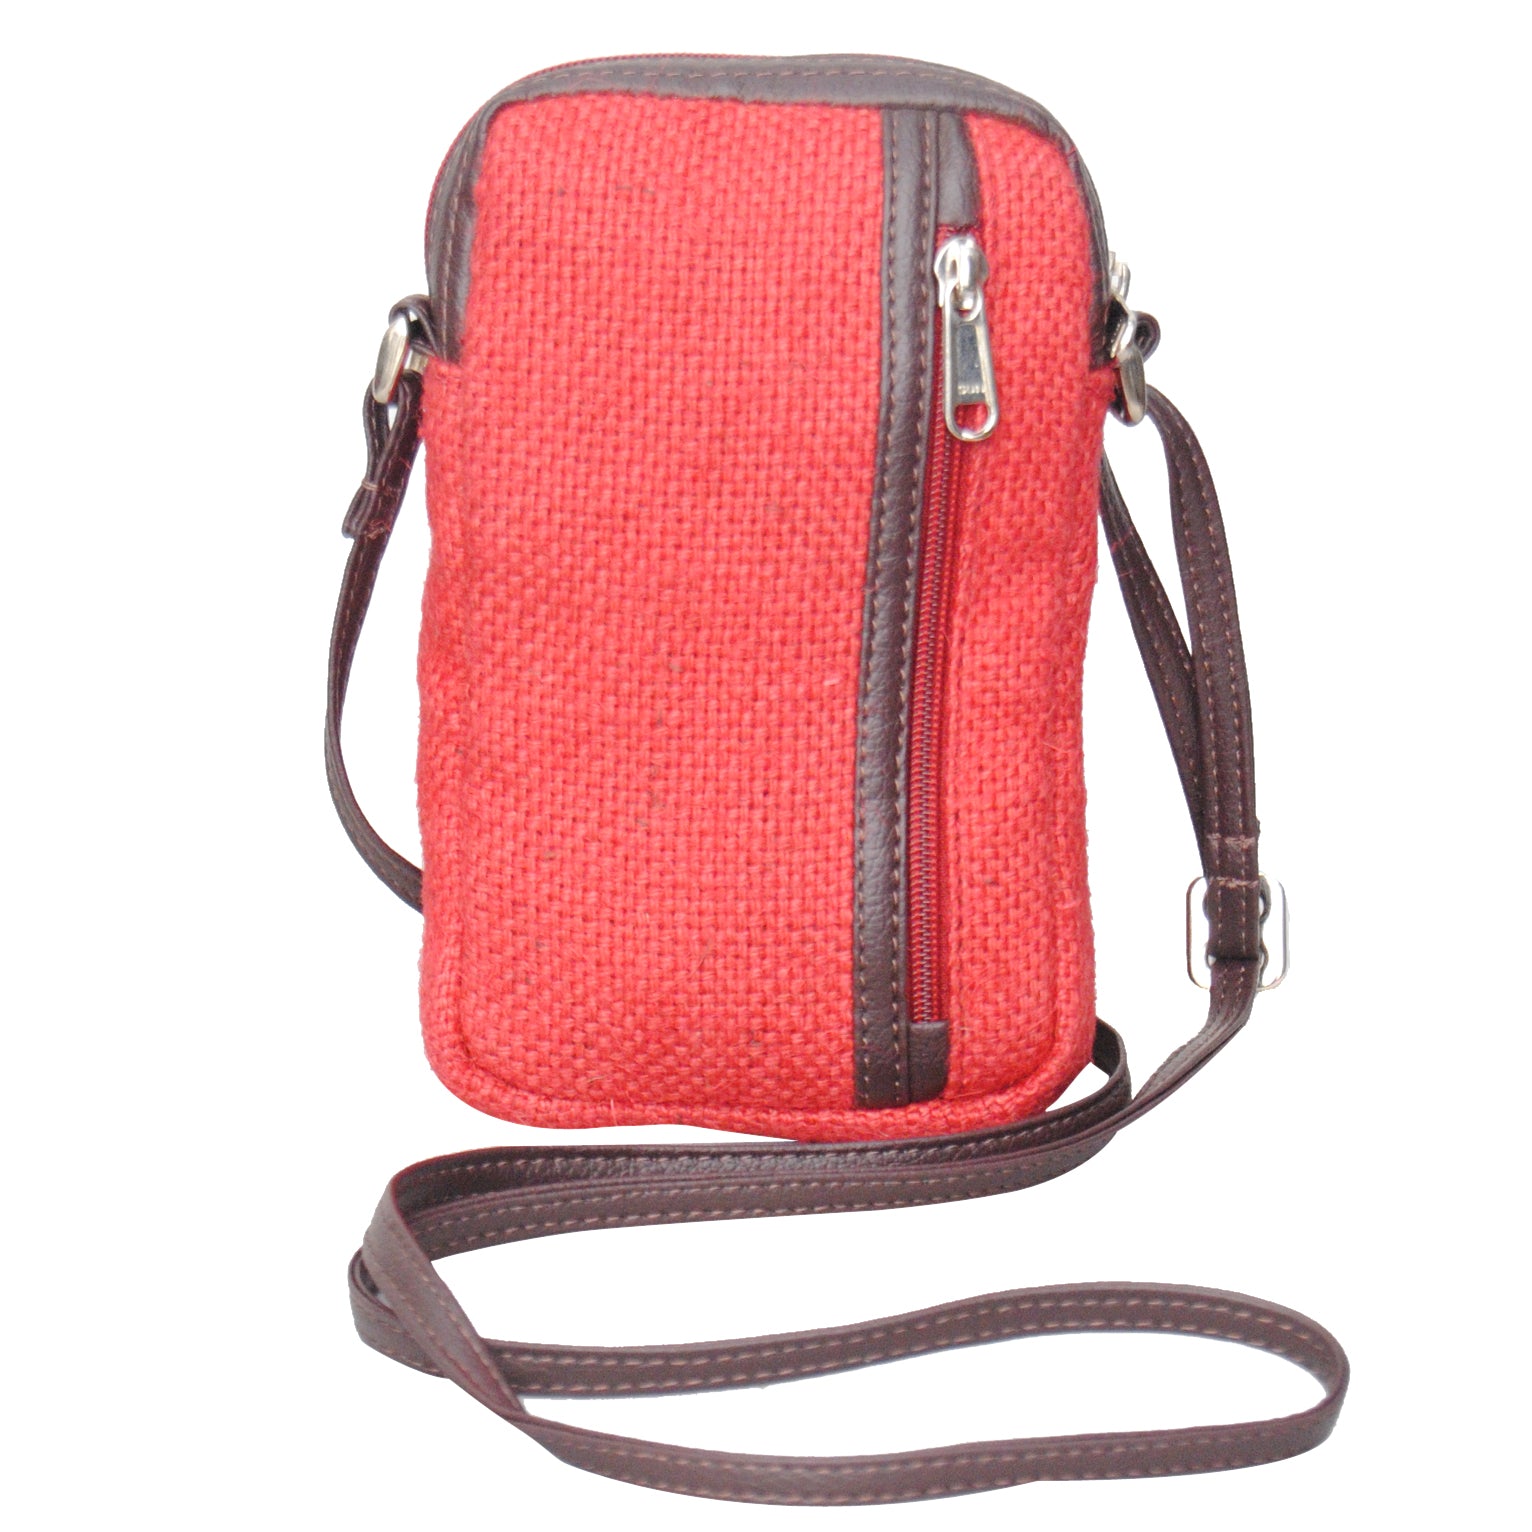 KK1157 Phone Bag Jute - Red